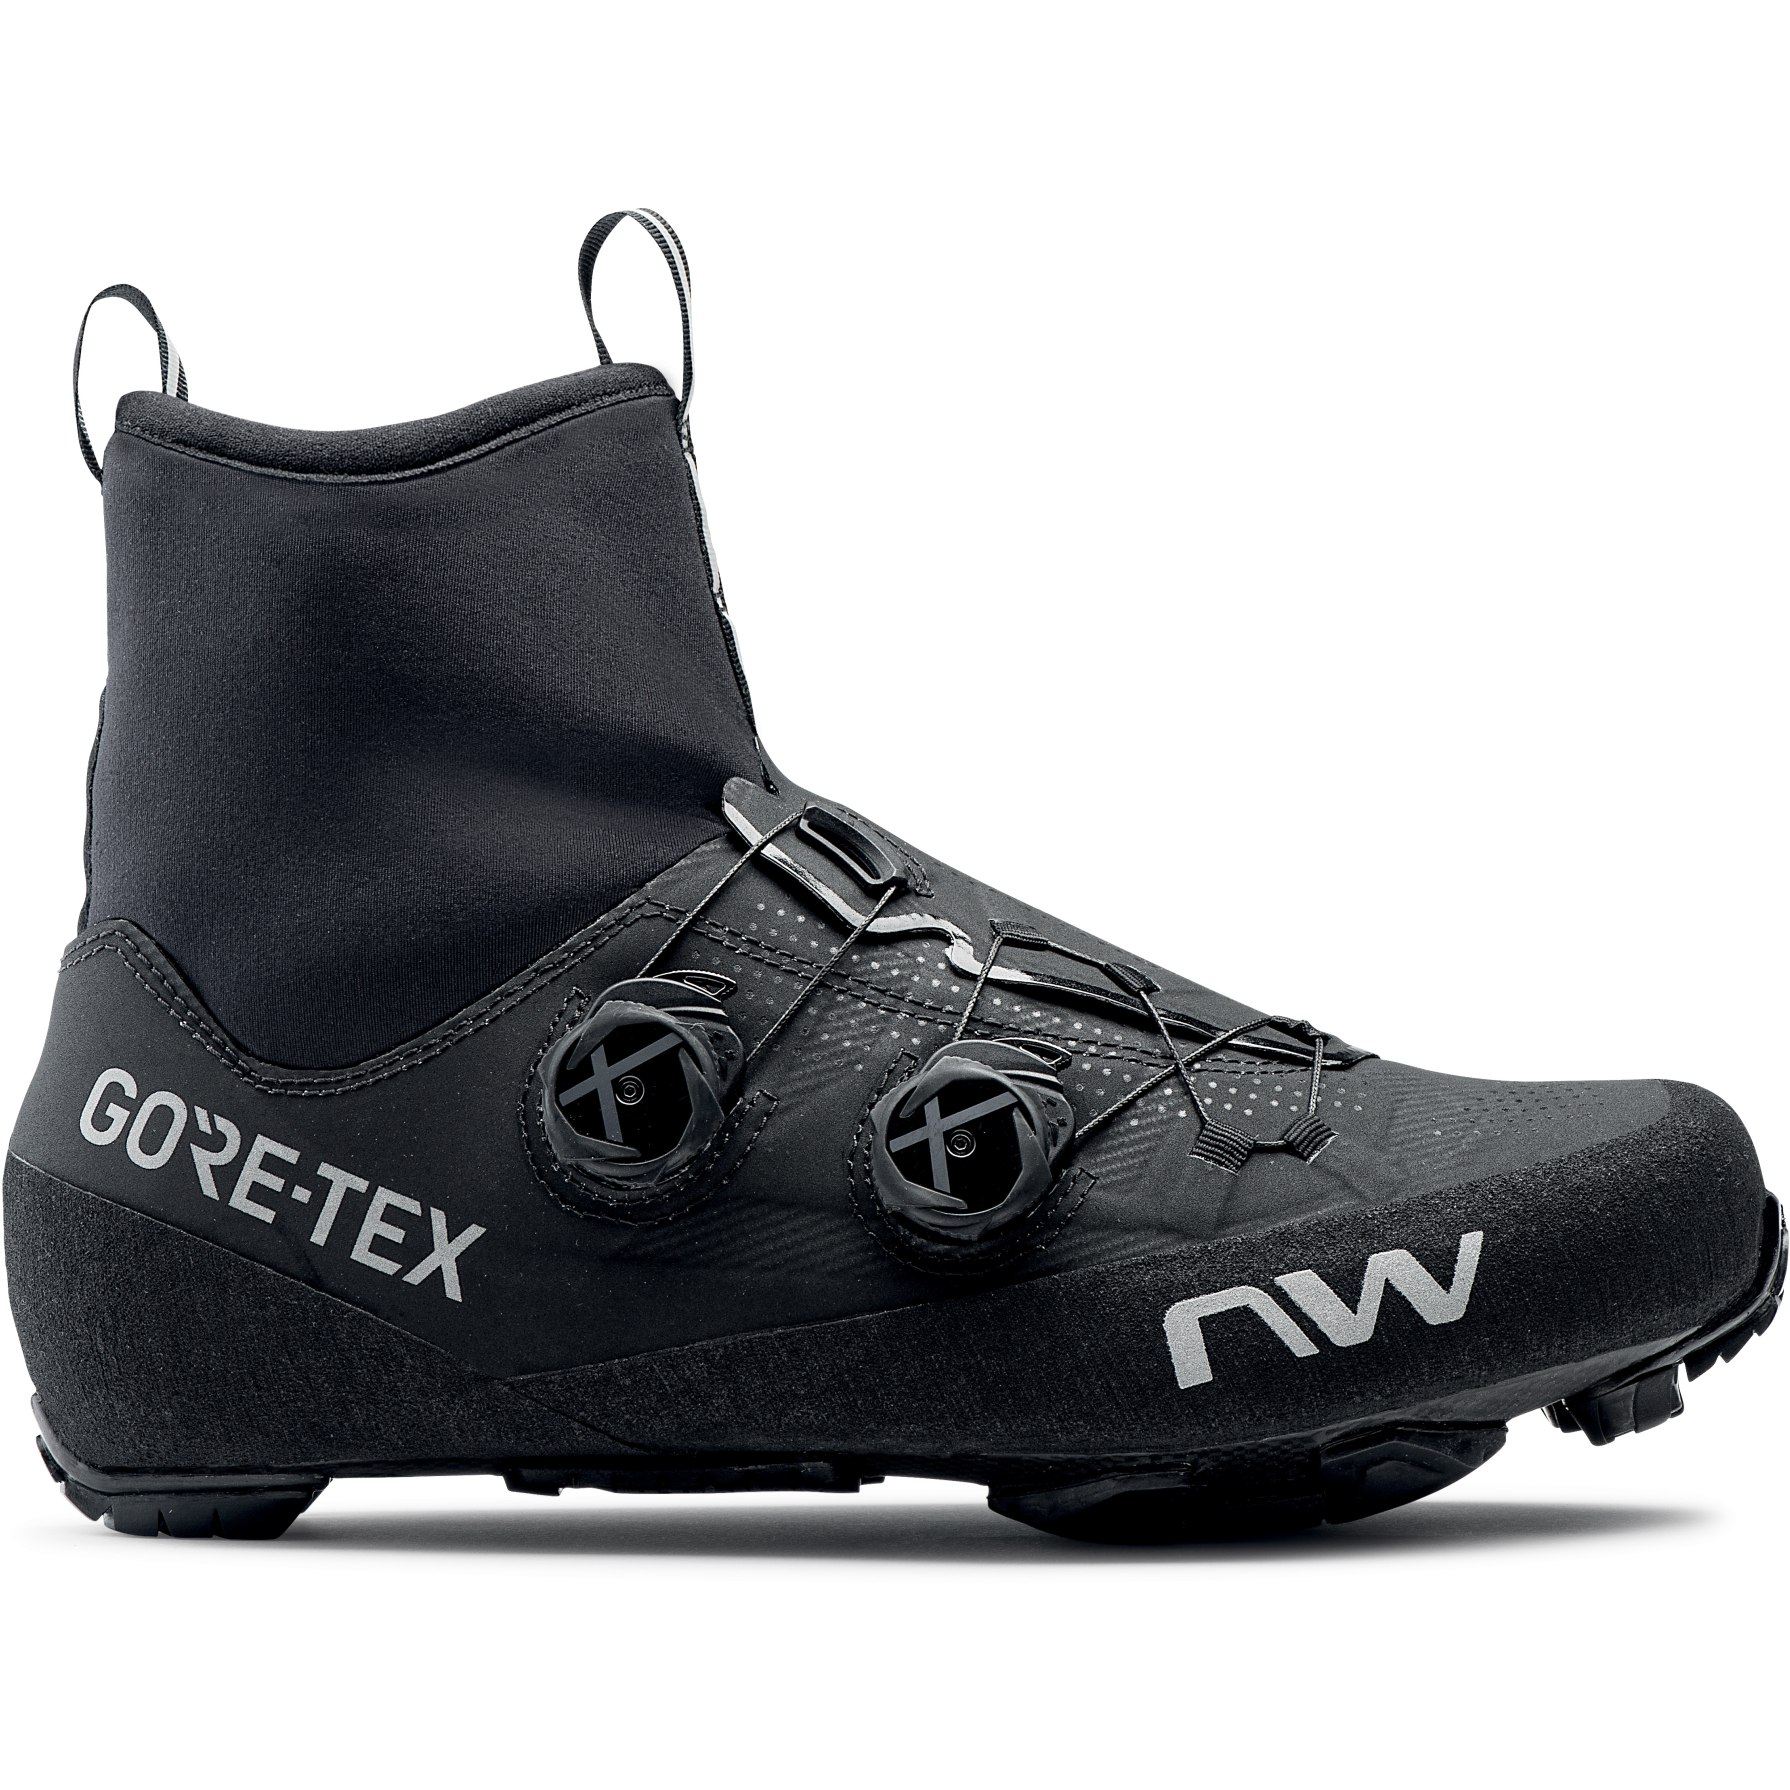 Bild von Northwave Flagship GTX MTB Schuhe - schwarz 10